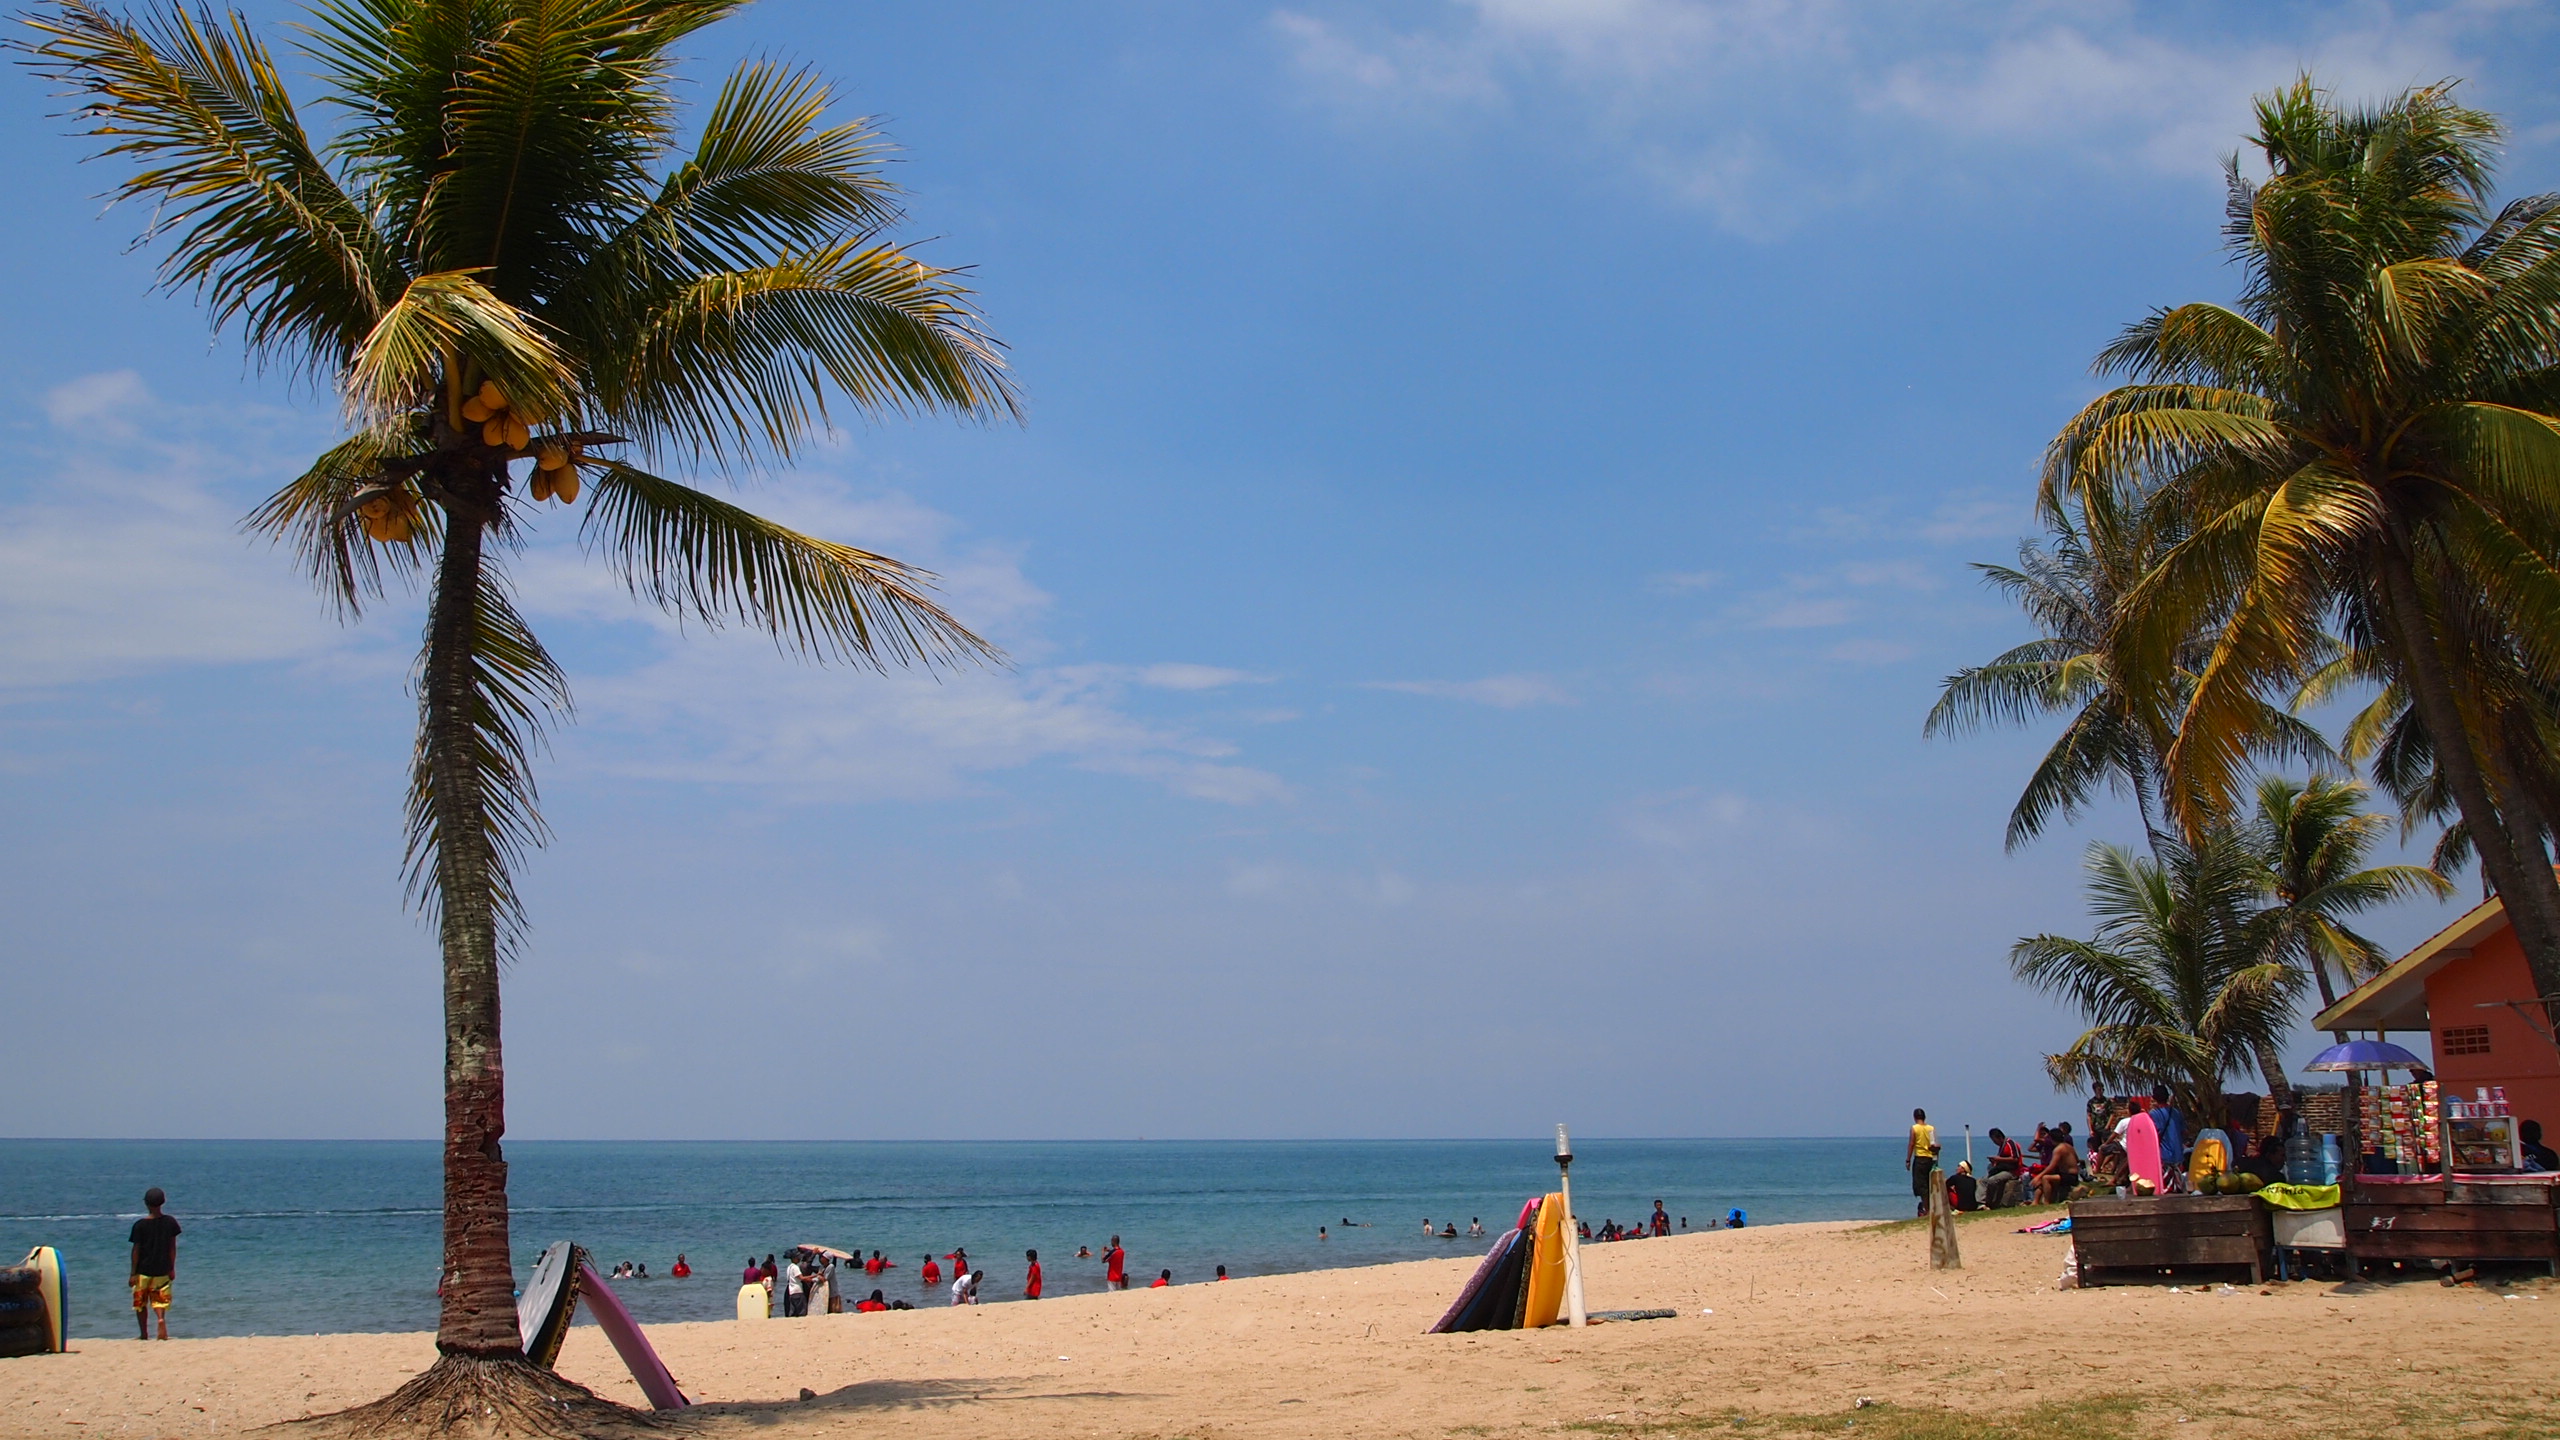 Pantai Terbaik Dan Paling Indah di Indonesia